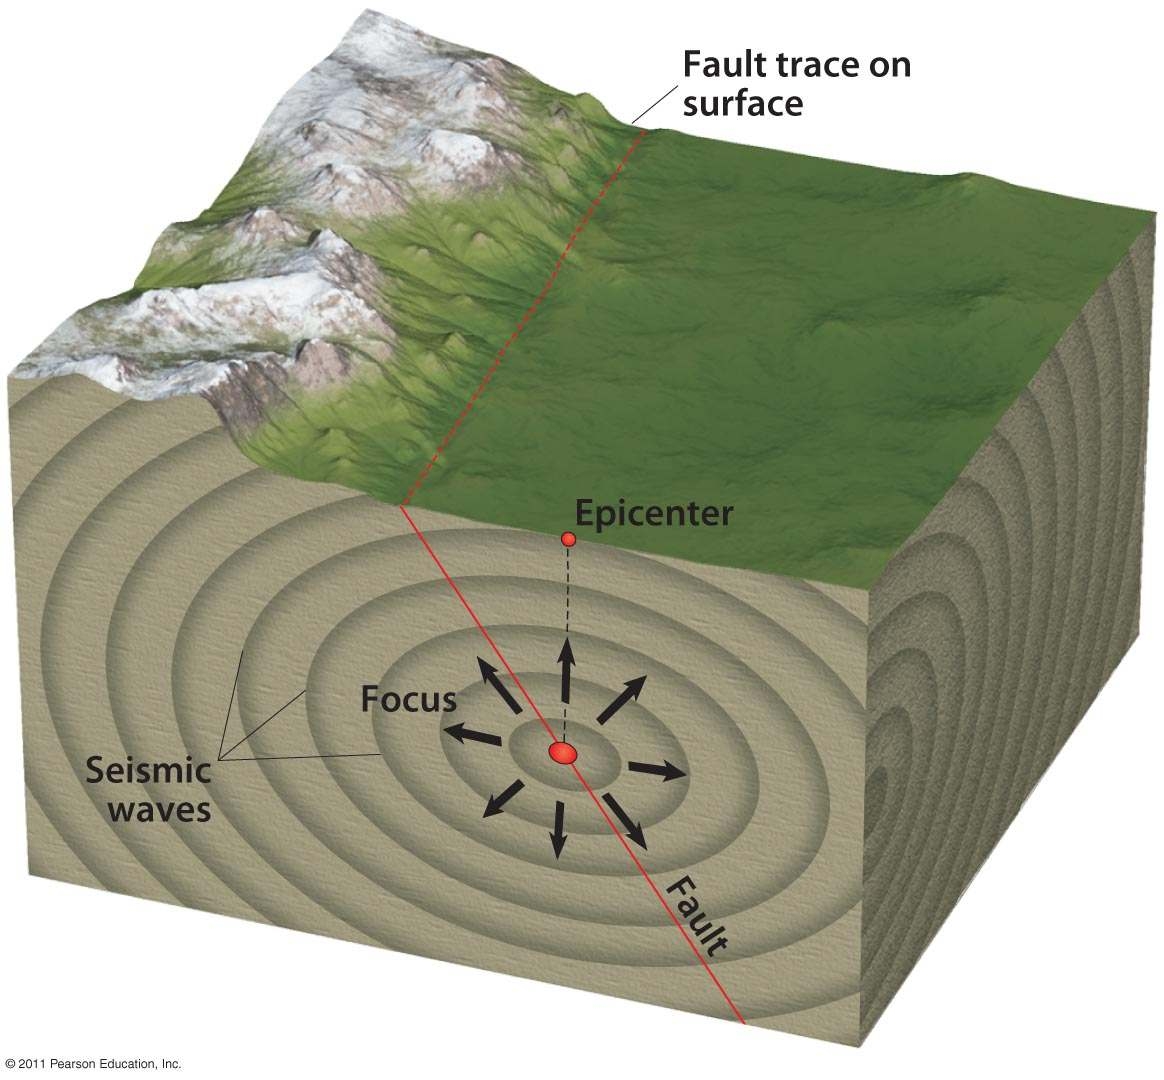 단층(fault)의 움직임이 지진을 일으킨다. 단층의 움직임이 진원(focus)에서 시작하여 밖으로 퍼져나가는 지진파(seismic waves)로 불리는 진동을 일으킨다. 진원 바로 위에 있는 지표면상의 지점이 진앙(epicenter)이다. 세계 도처에서 일어나는 지진의 대부분은 너무 작아서 사람들이 감지할 수 없지만, 인구 밀집지역에서 발생하는 더 큰 지진은 파괴적일 수 있다.